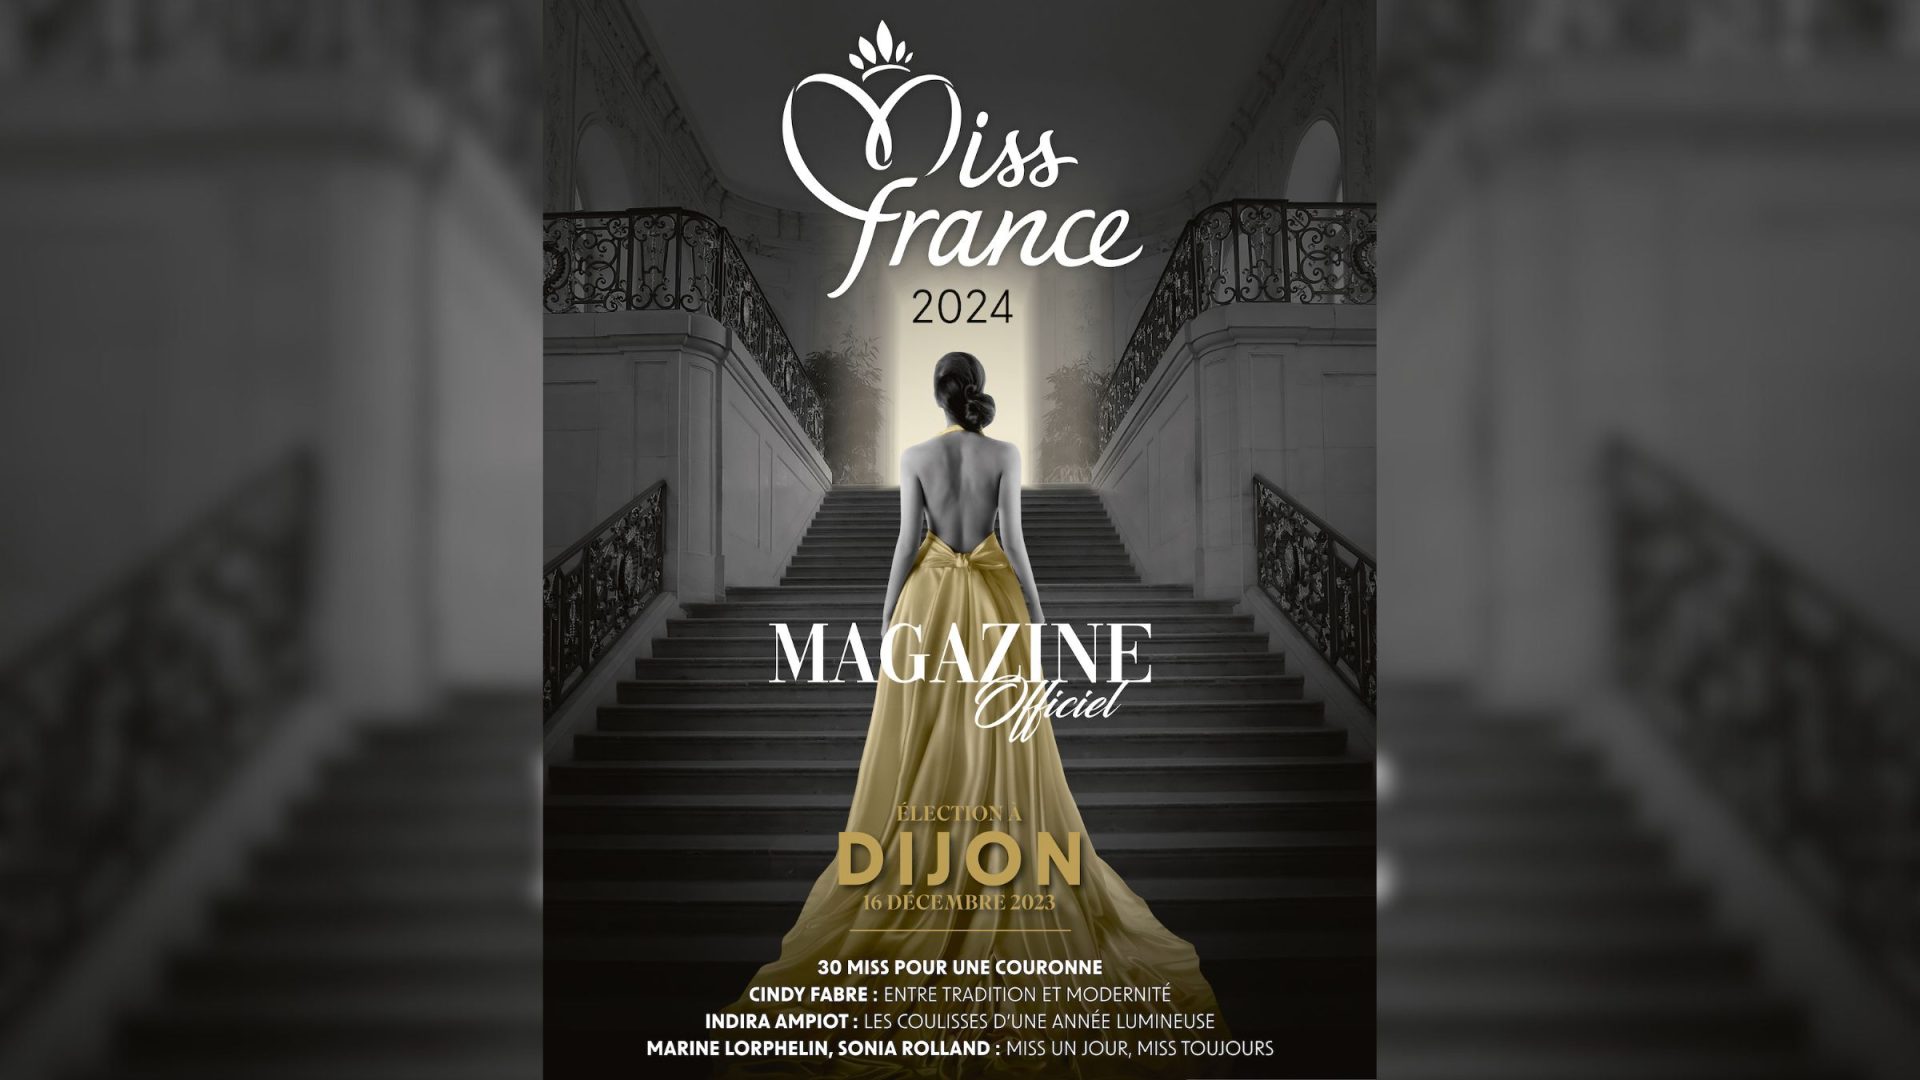 Exclusivité. Découvrez le Magazine Officiel Miss France 2024